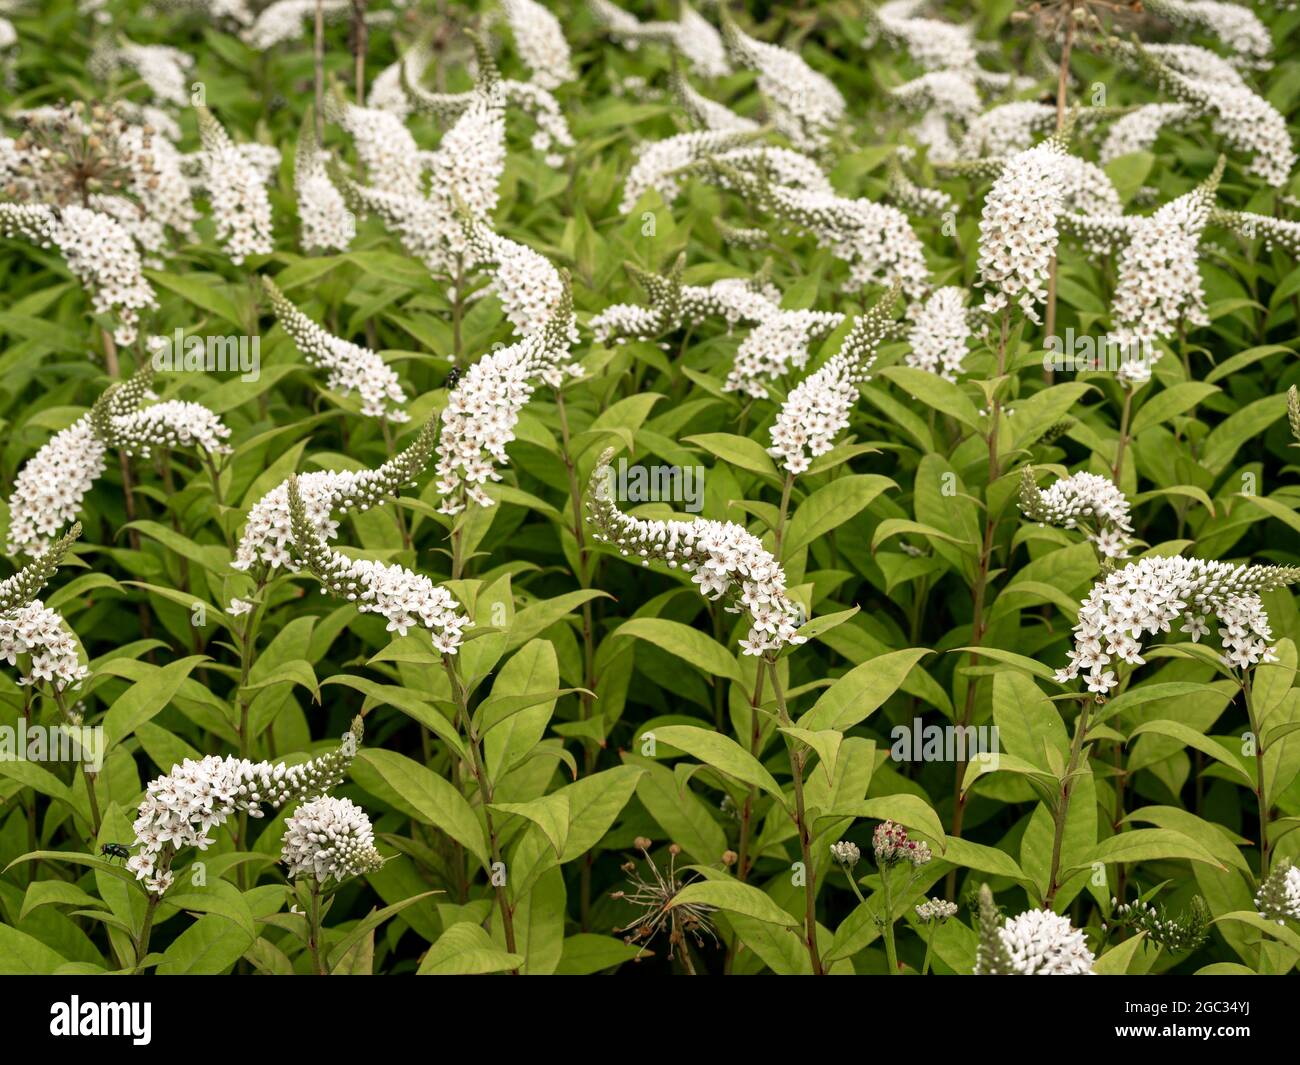 White flower spikes of gooseneck loosestrife, Lysimachia clethroides Stock Photo